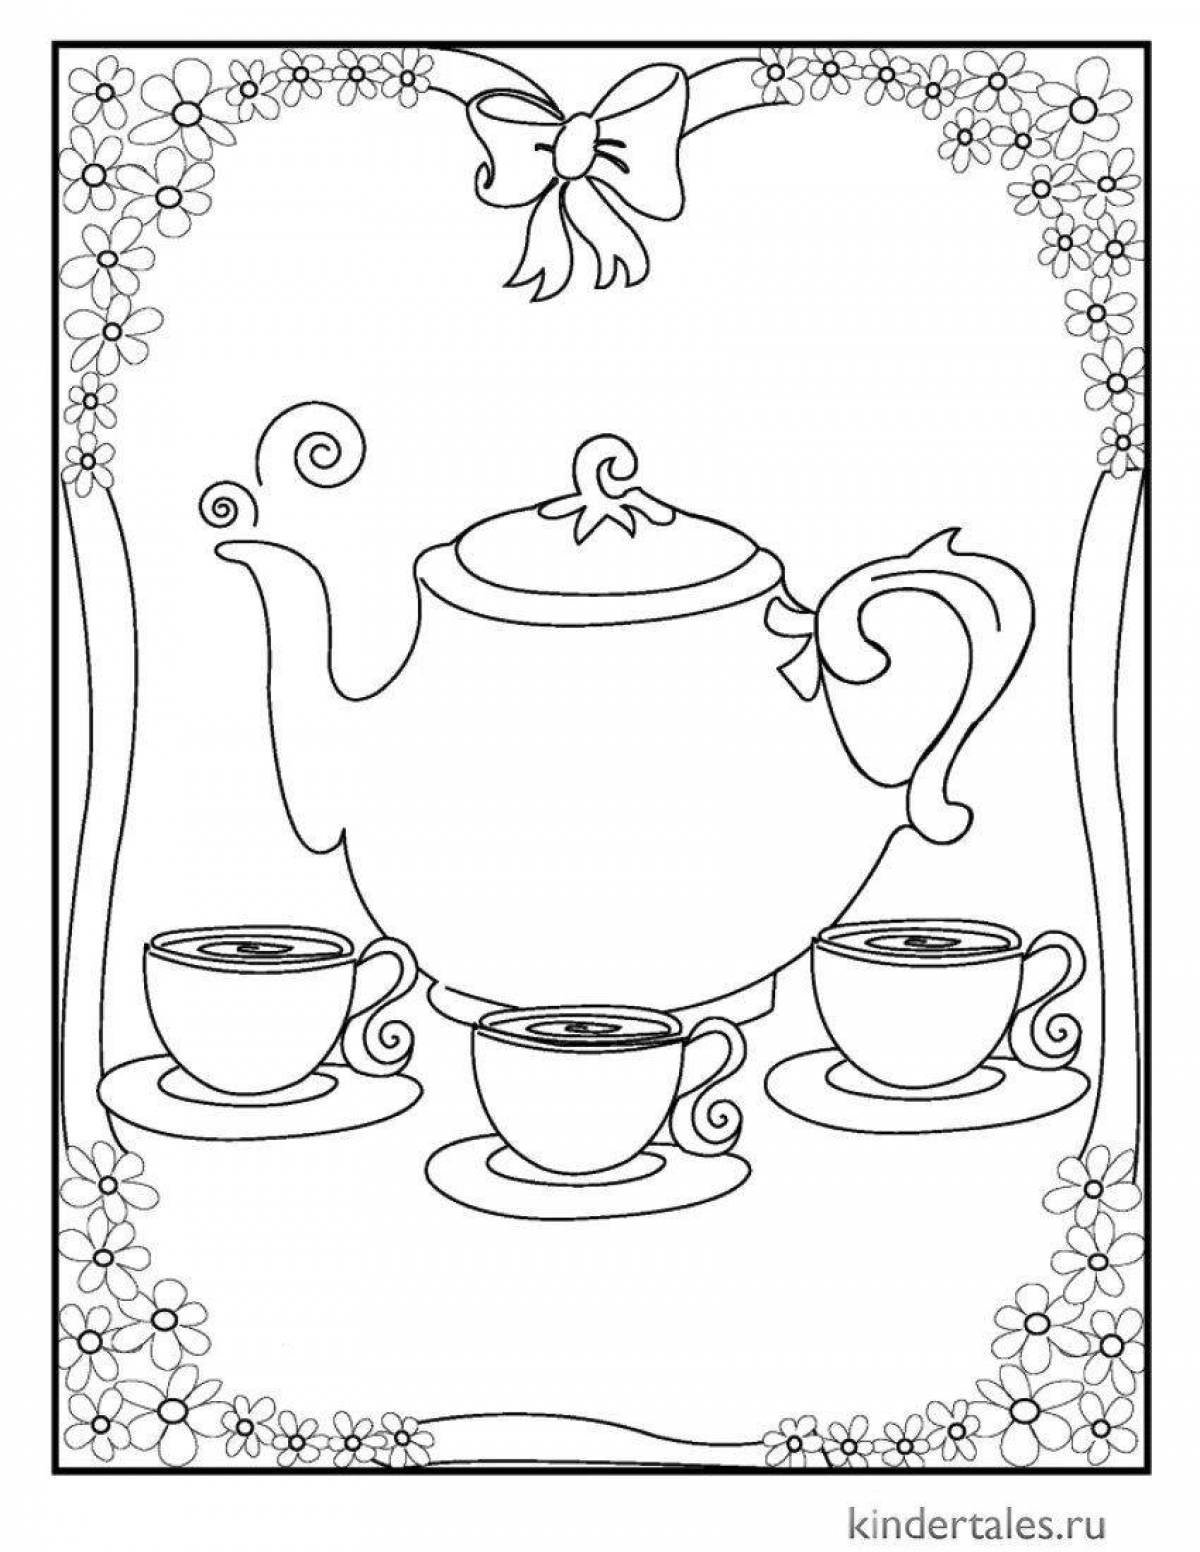 Творческая страница раскраски чайного сервиза